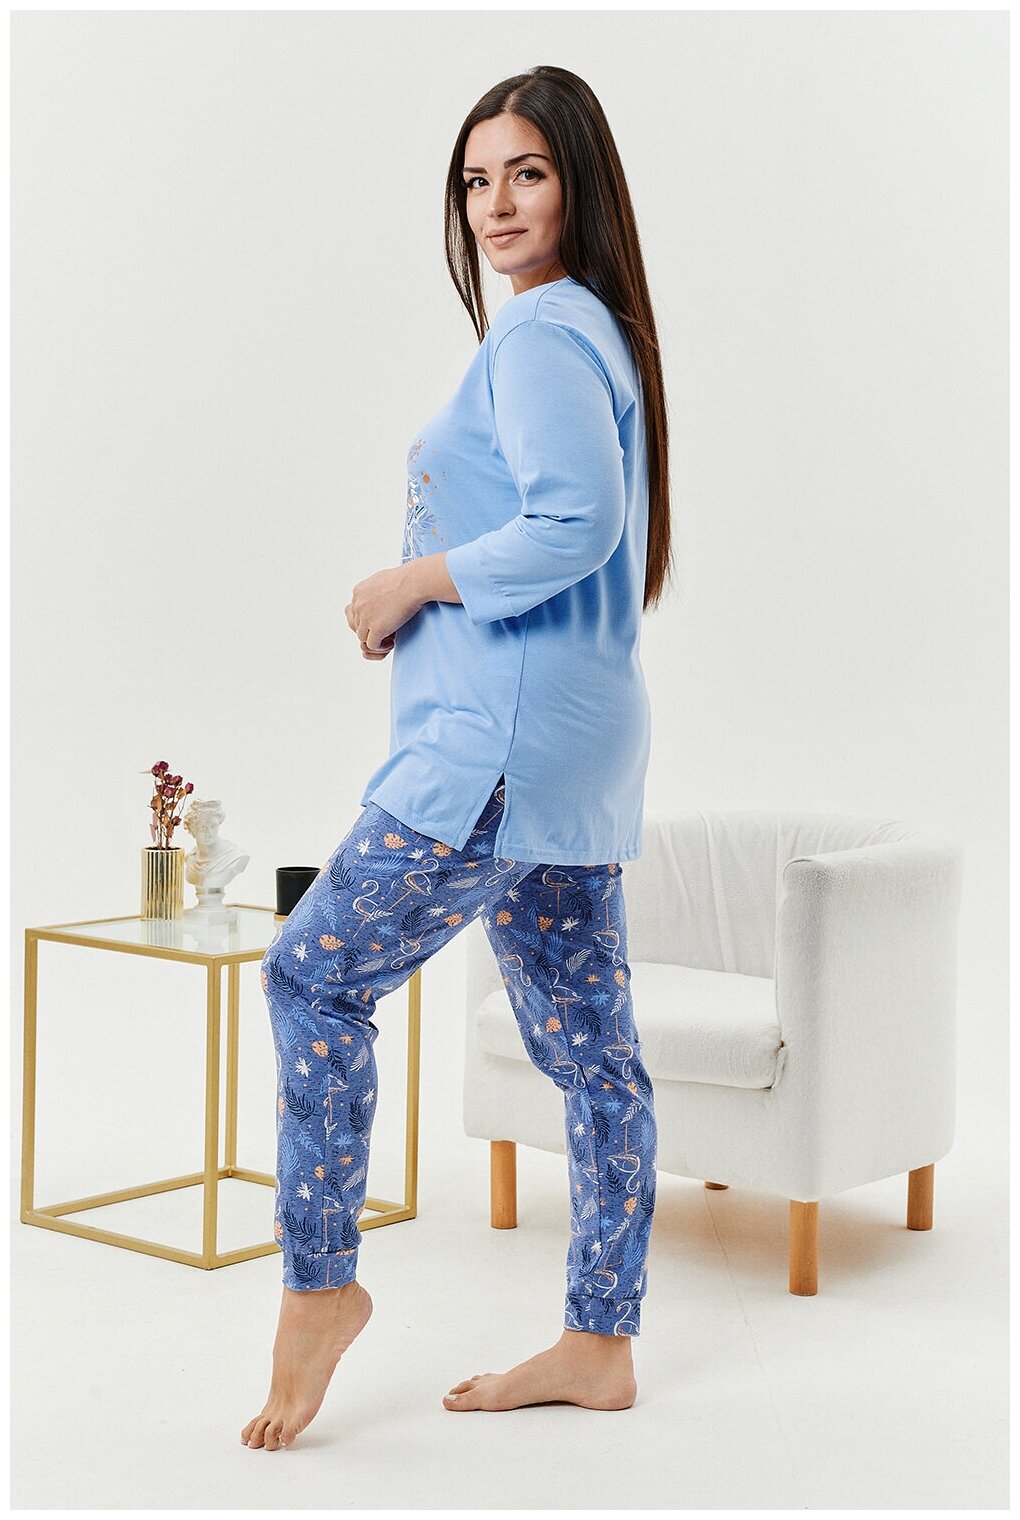 Женский домашний костюм/ пижама ( футболка+ брюки) в голубом цвете, размер 48 - фотография № 6